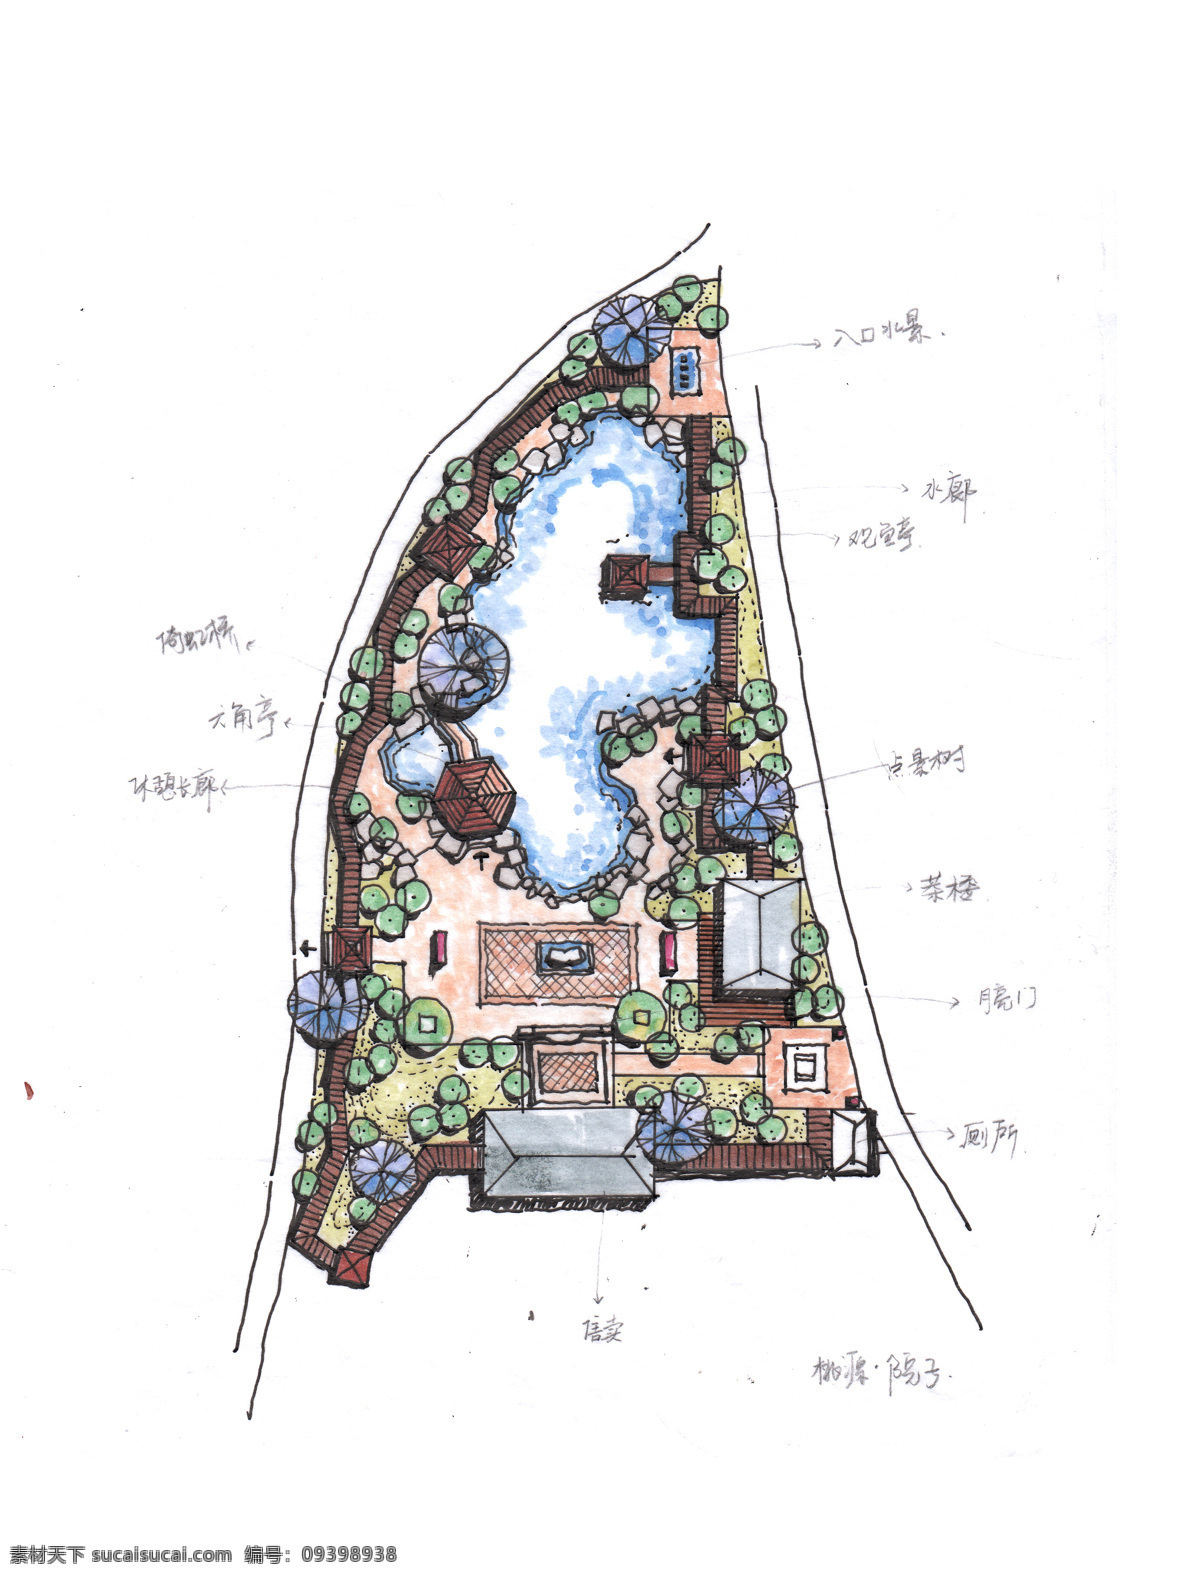 中式 院子 手绘 平面图 中式院子 戏楼 茶楼 连廊 荷花池 钢笔画 马克笔表现 环境设计 景观设计